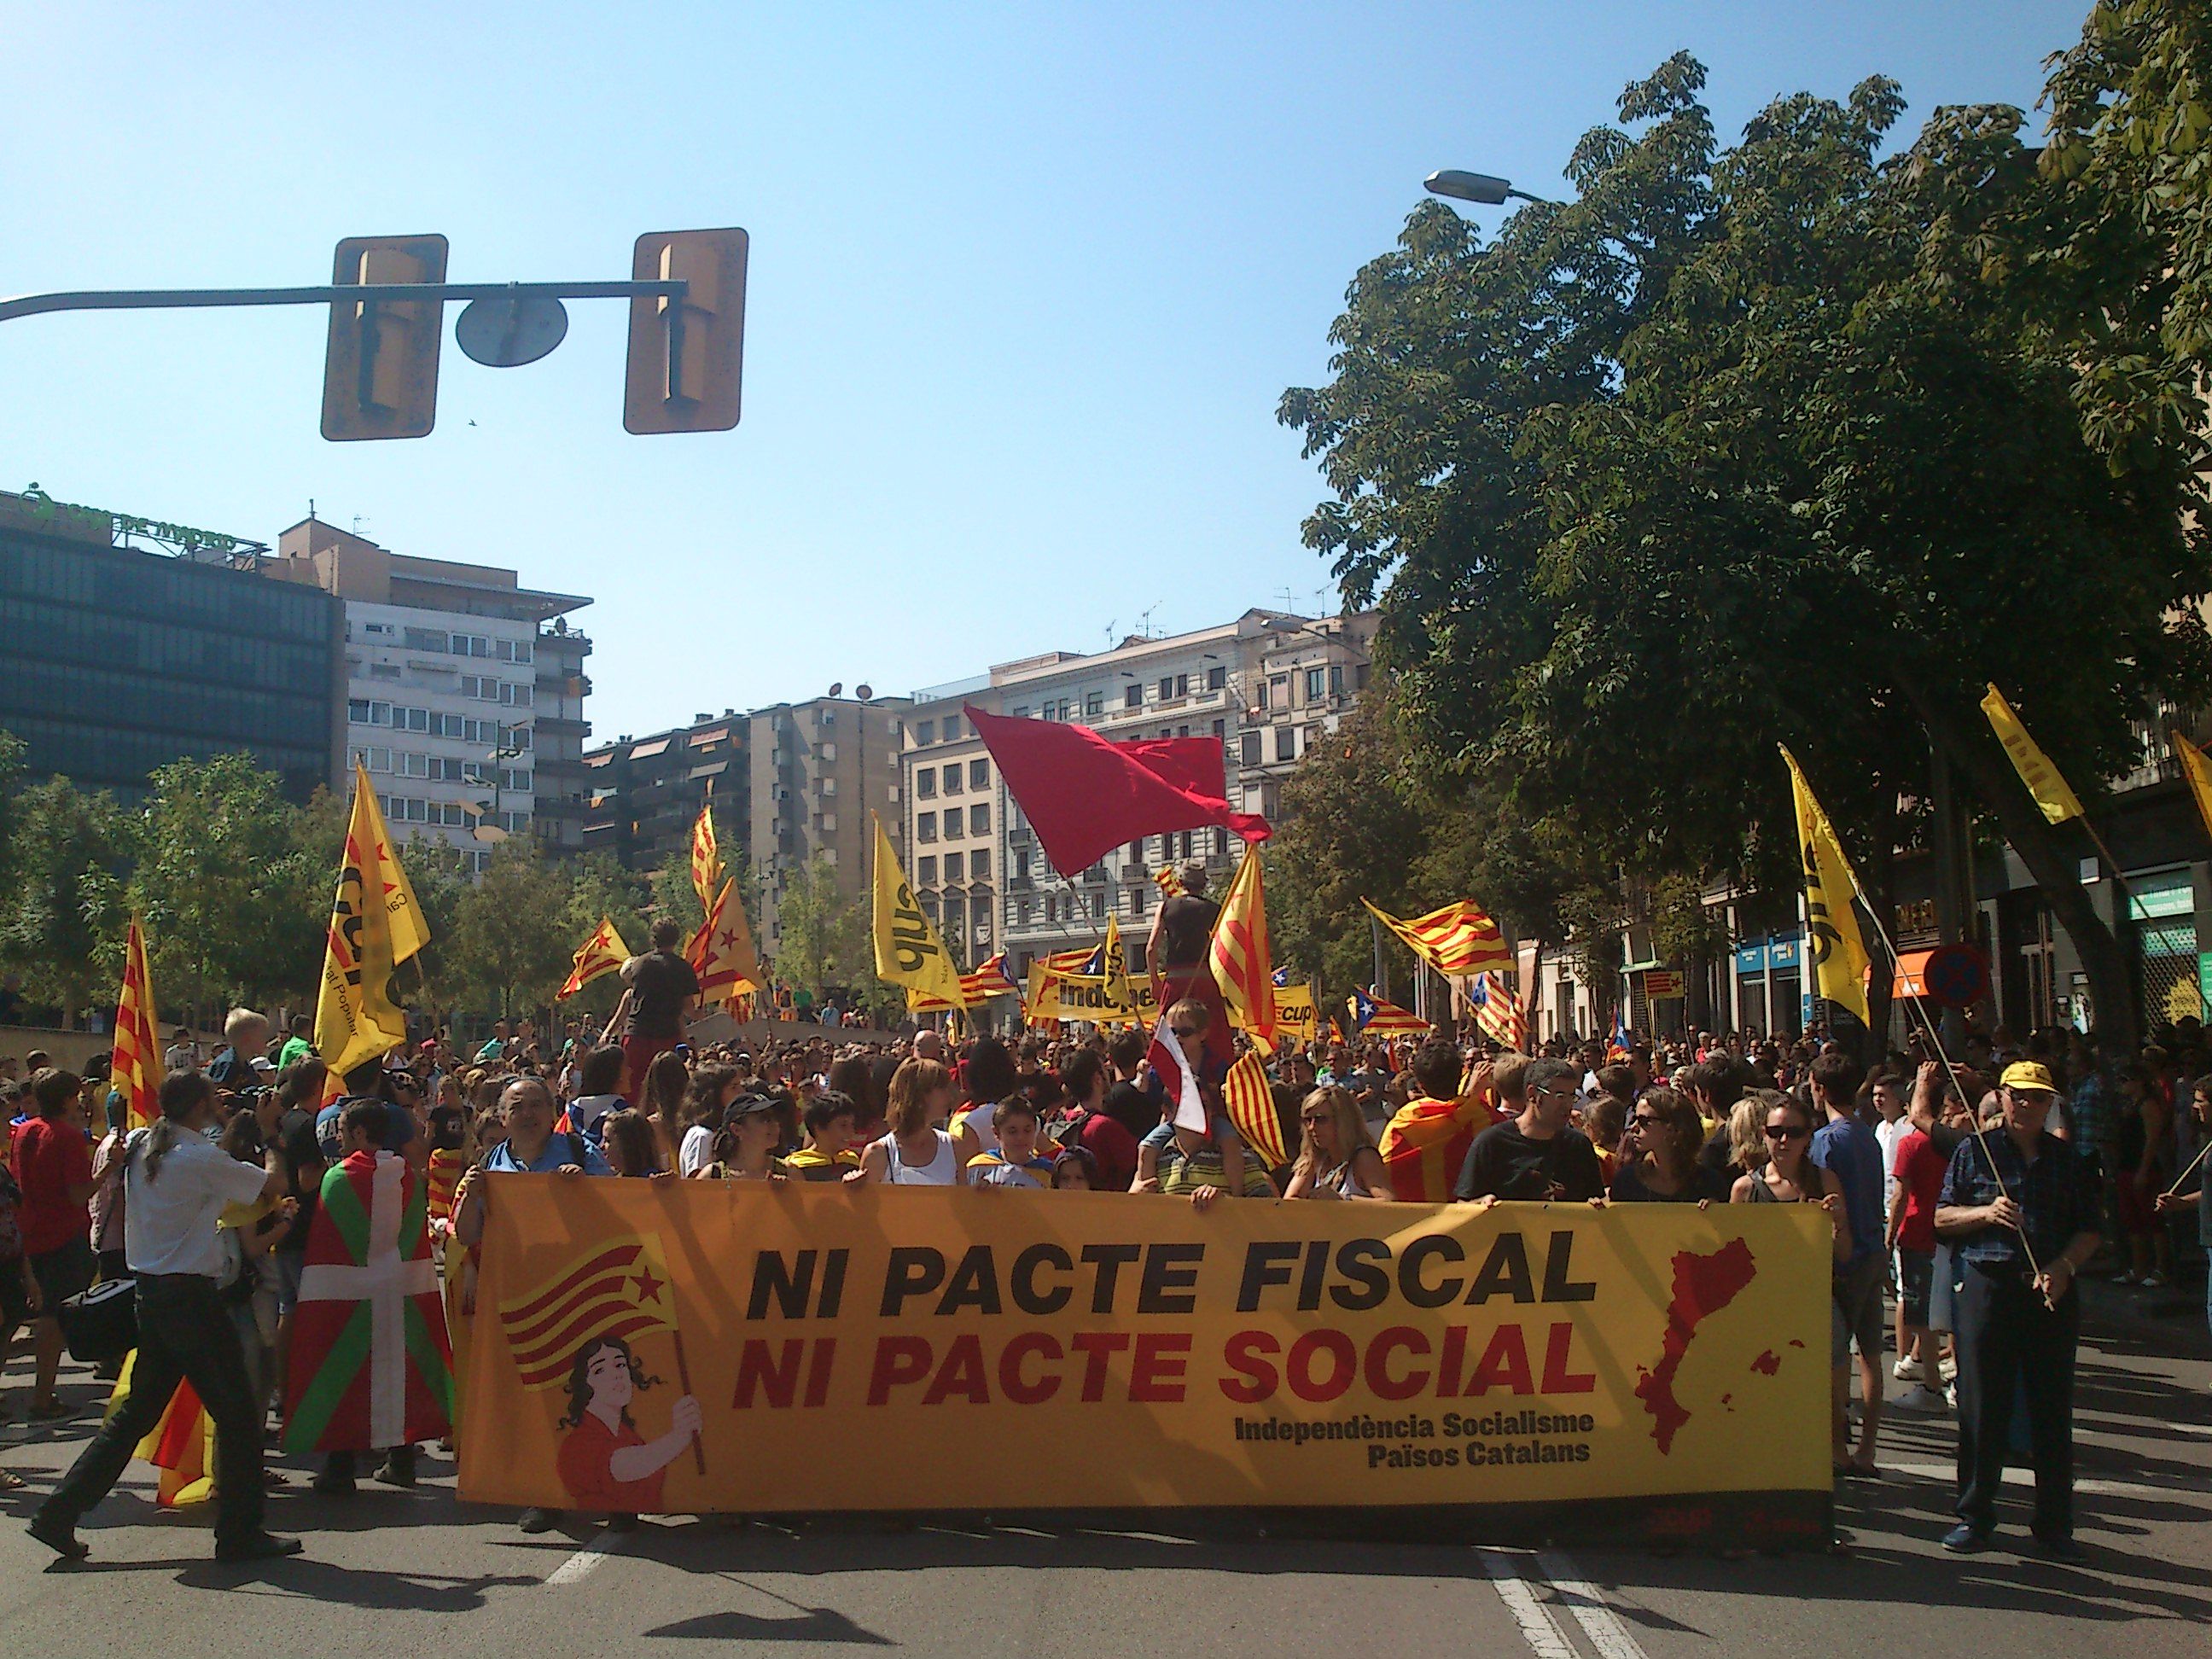 Capçalera de la manifestació de Girona